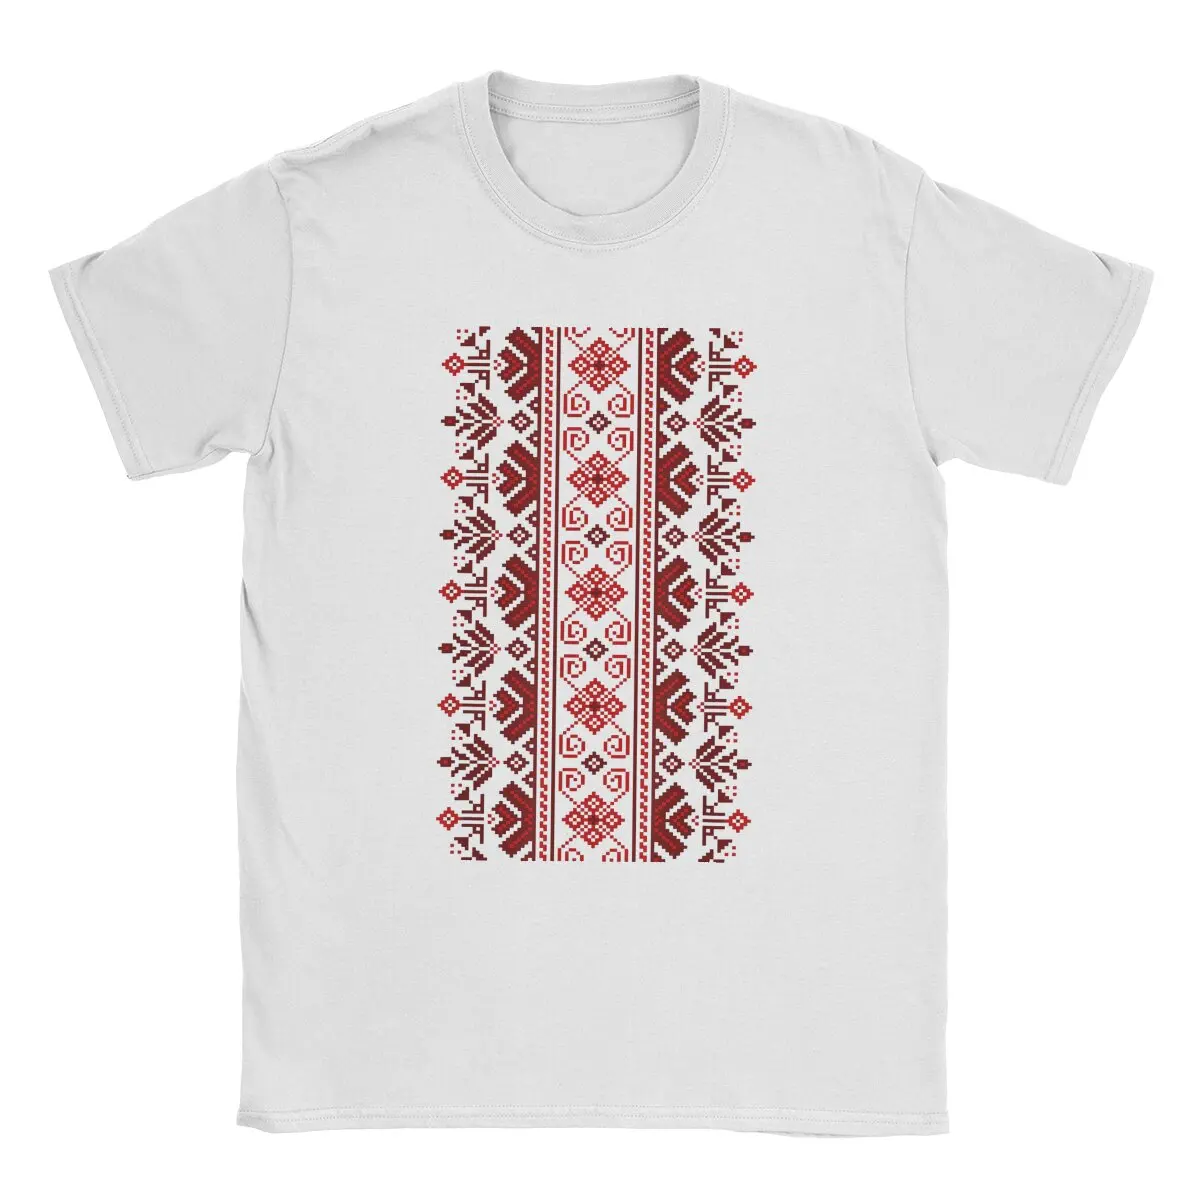 Мужская футболка с вышивкой нитками, модная хлопковая футболка, Украинский народный этнический орнамент, футболка, одежда, Идея подарка